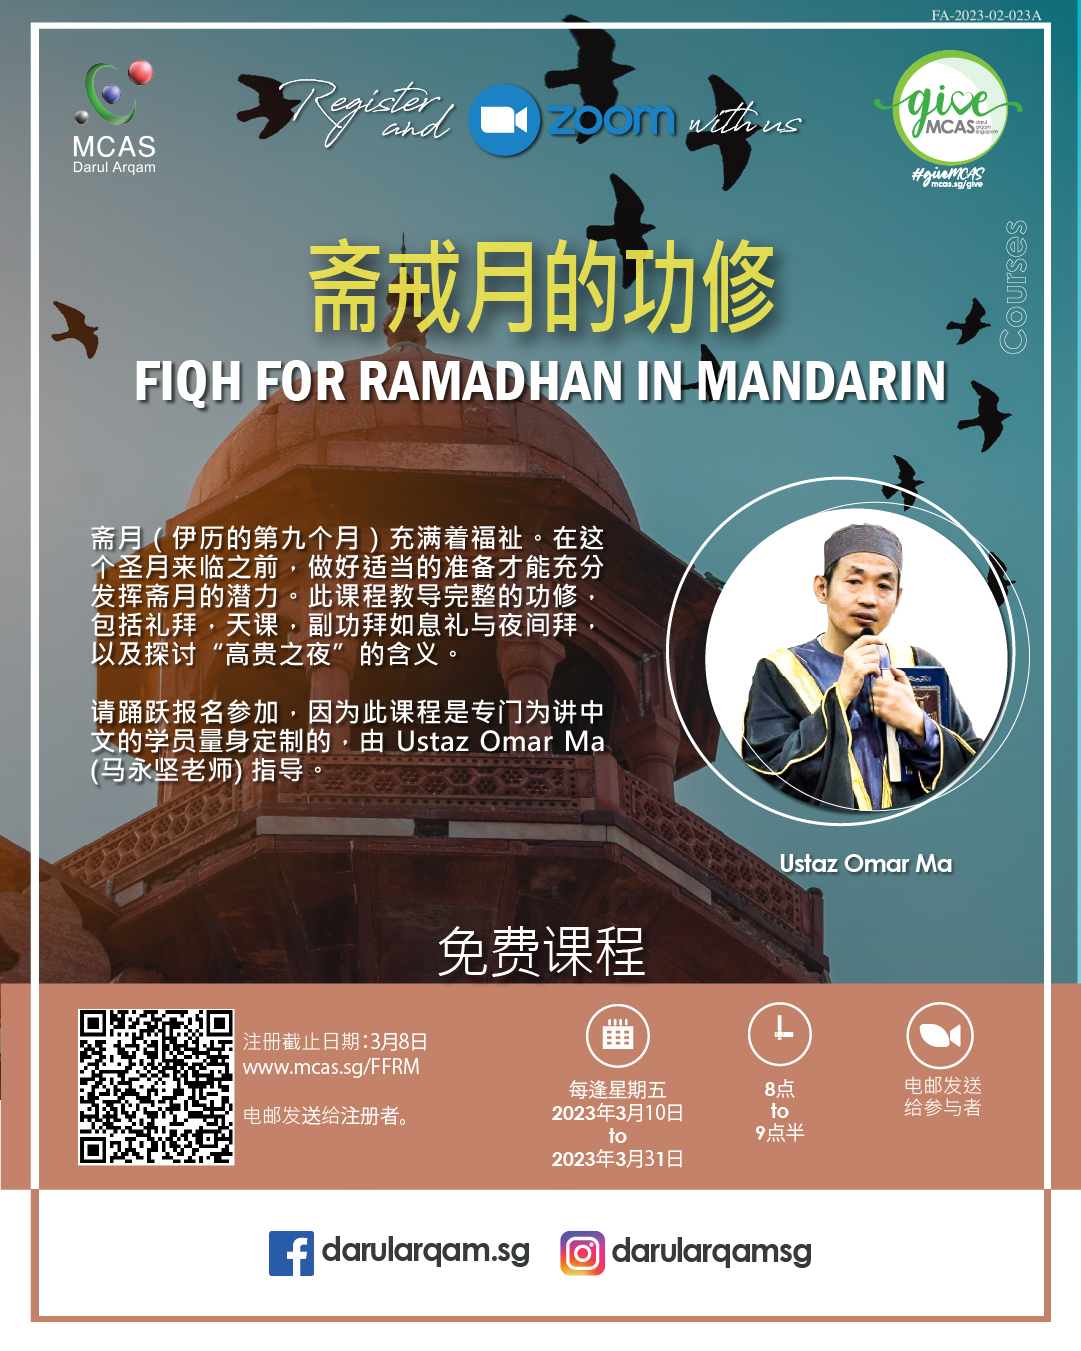 Fiqh for Ramadhan in Mandarin